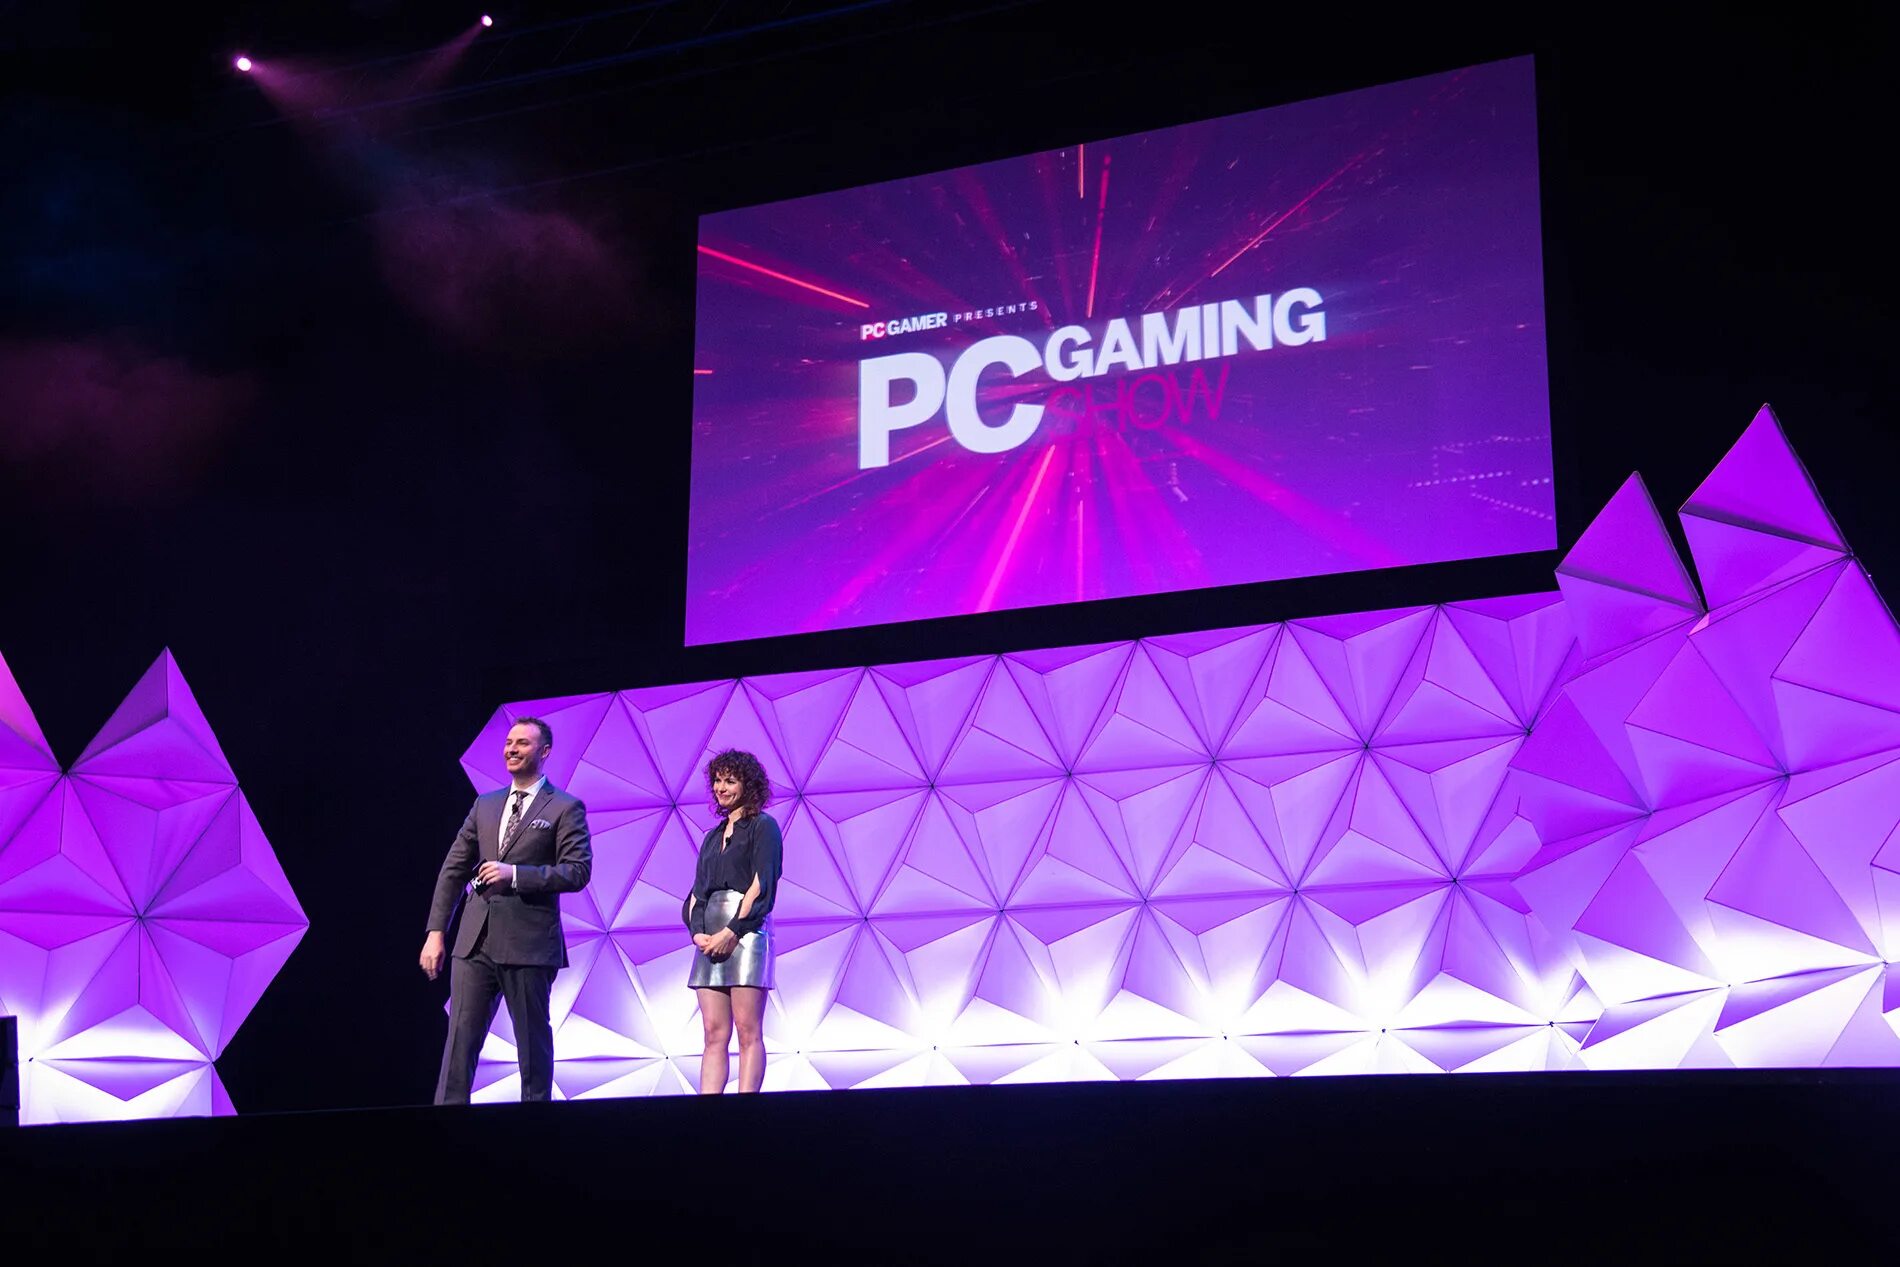 PC Gaming show 2020. PC Gaming show 2021. Телевизионные игры. E3 2020 выставка. Игры будущего участники список